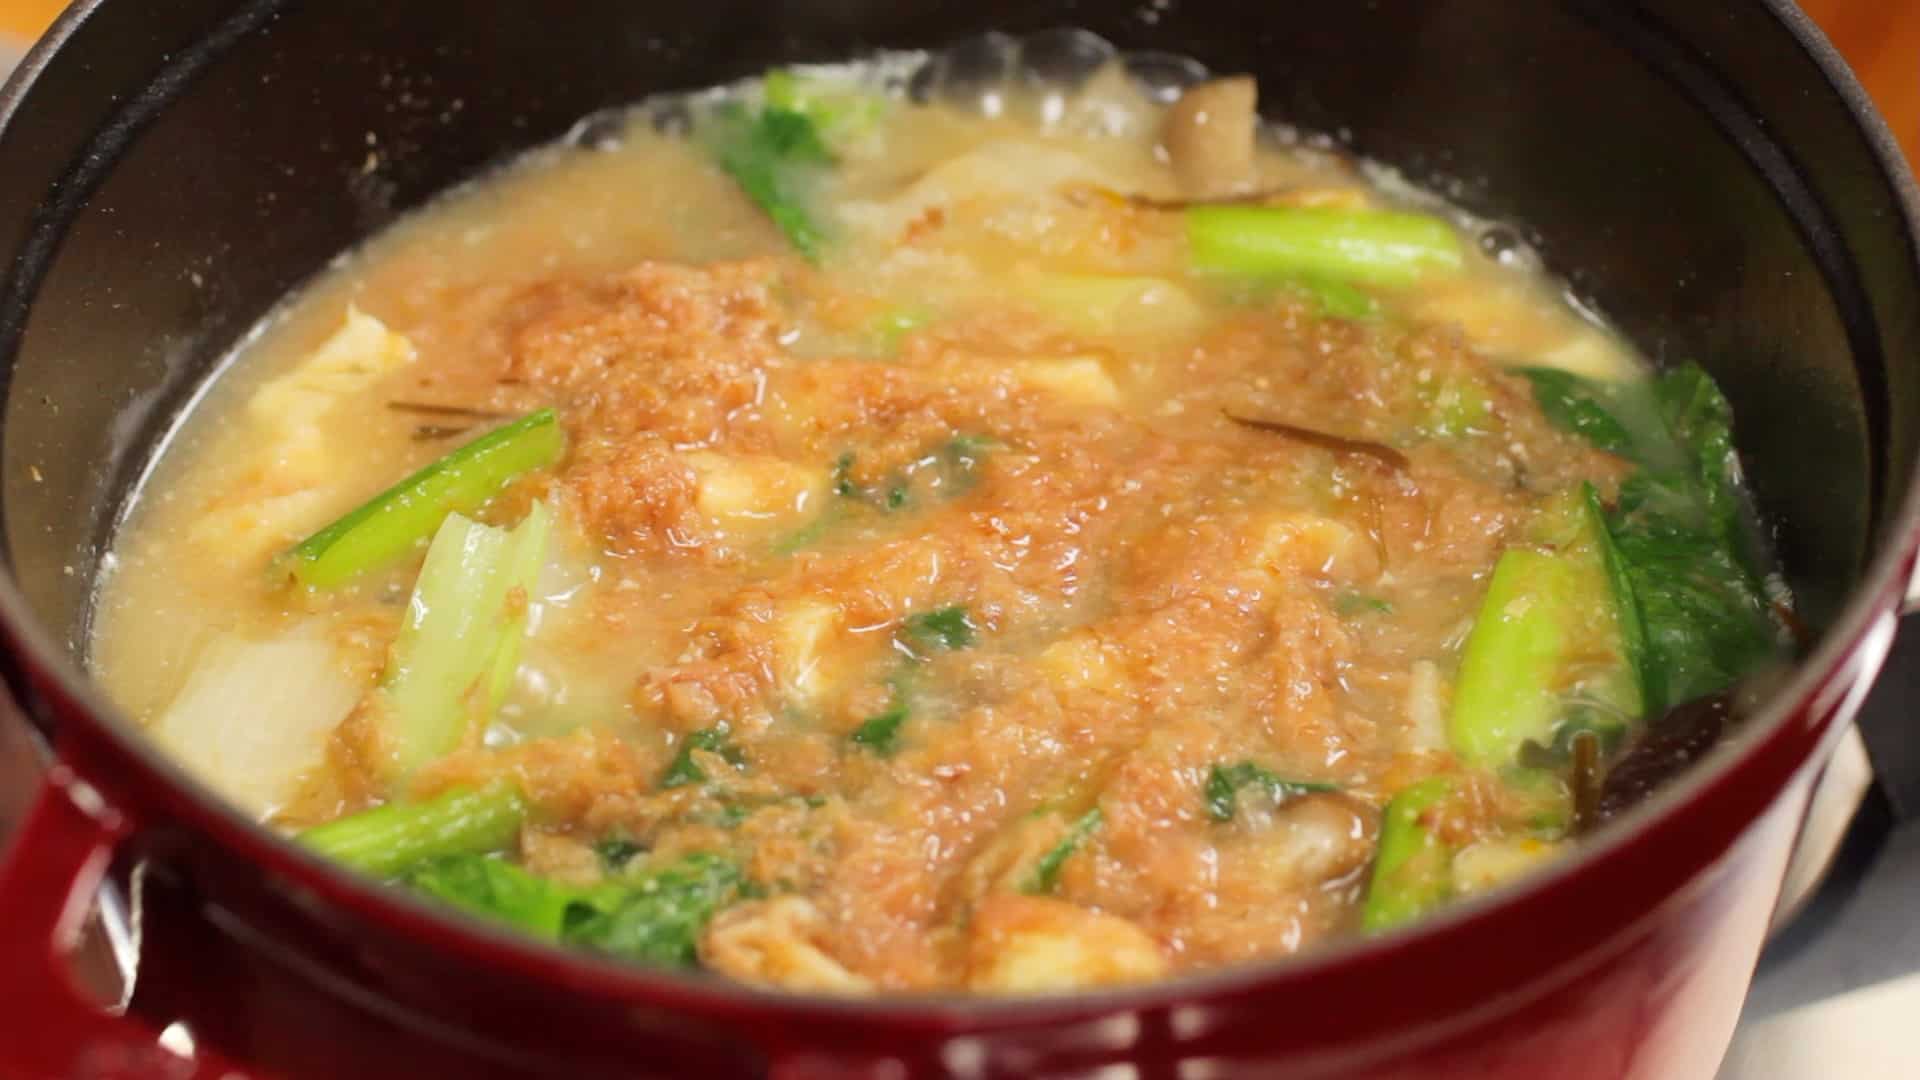 Recette de soupe miso copieuse (la plus saine des recettes